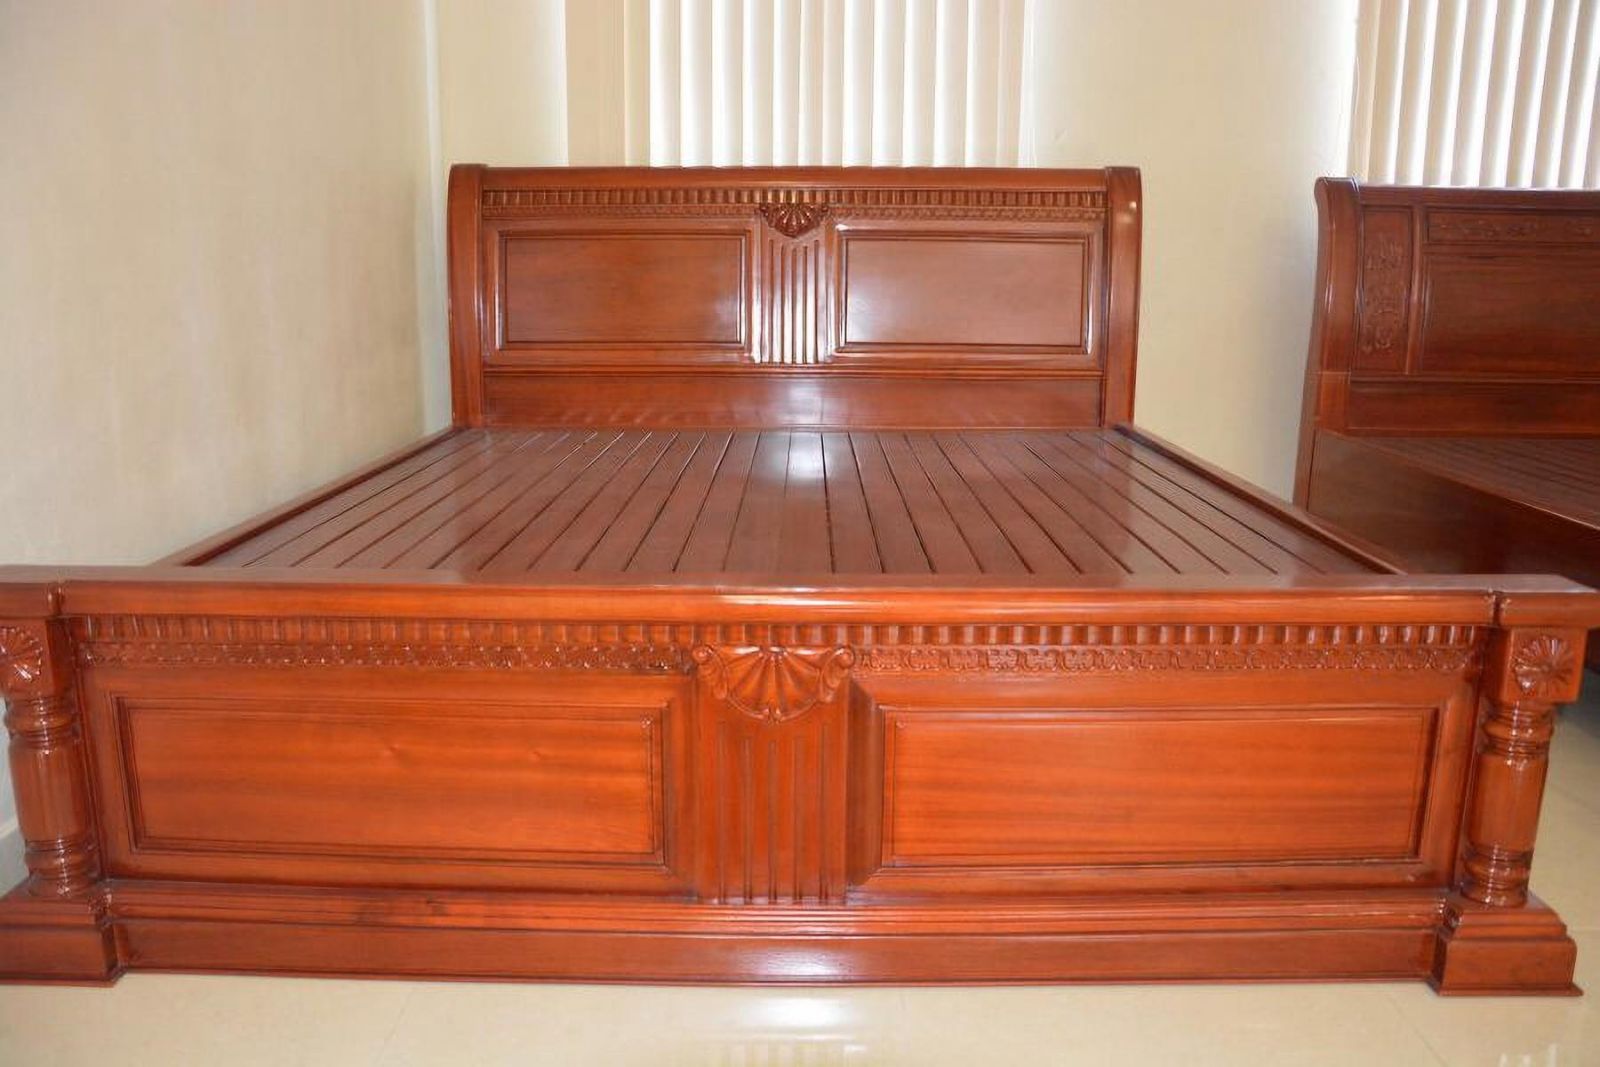 Giường ngủ gỗ gụ đẹp là điểm nhấn cho phòng ngủ của bạn. Gỗ gụ có màu sắc cực đẹp và được biết đến với độ bền và độ cứng cao. Khung giường được cắt và chế tác tinh xảo với những kích thước chuẩn xác để mang lại cảm giác thoải mái nhất khi nằm. Hãy xem chi tiết hình ảnh giường ngủ gỗ gụ đẹp này.